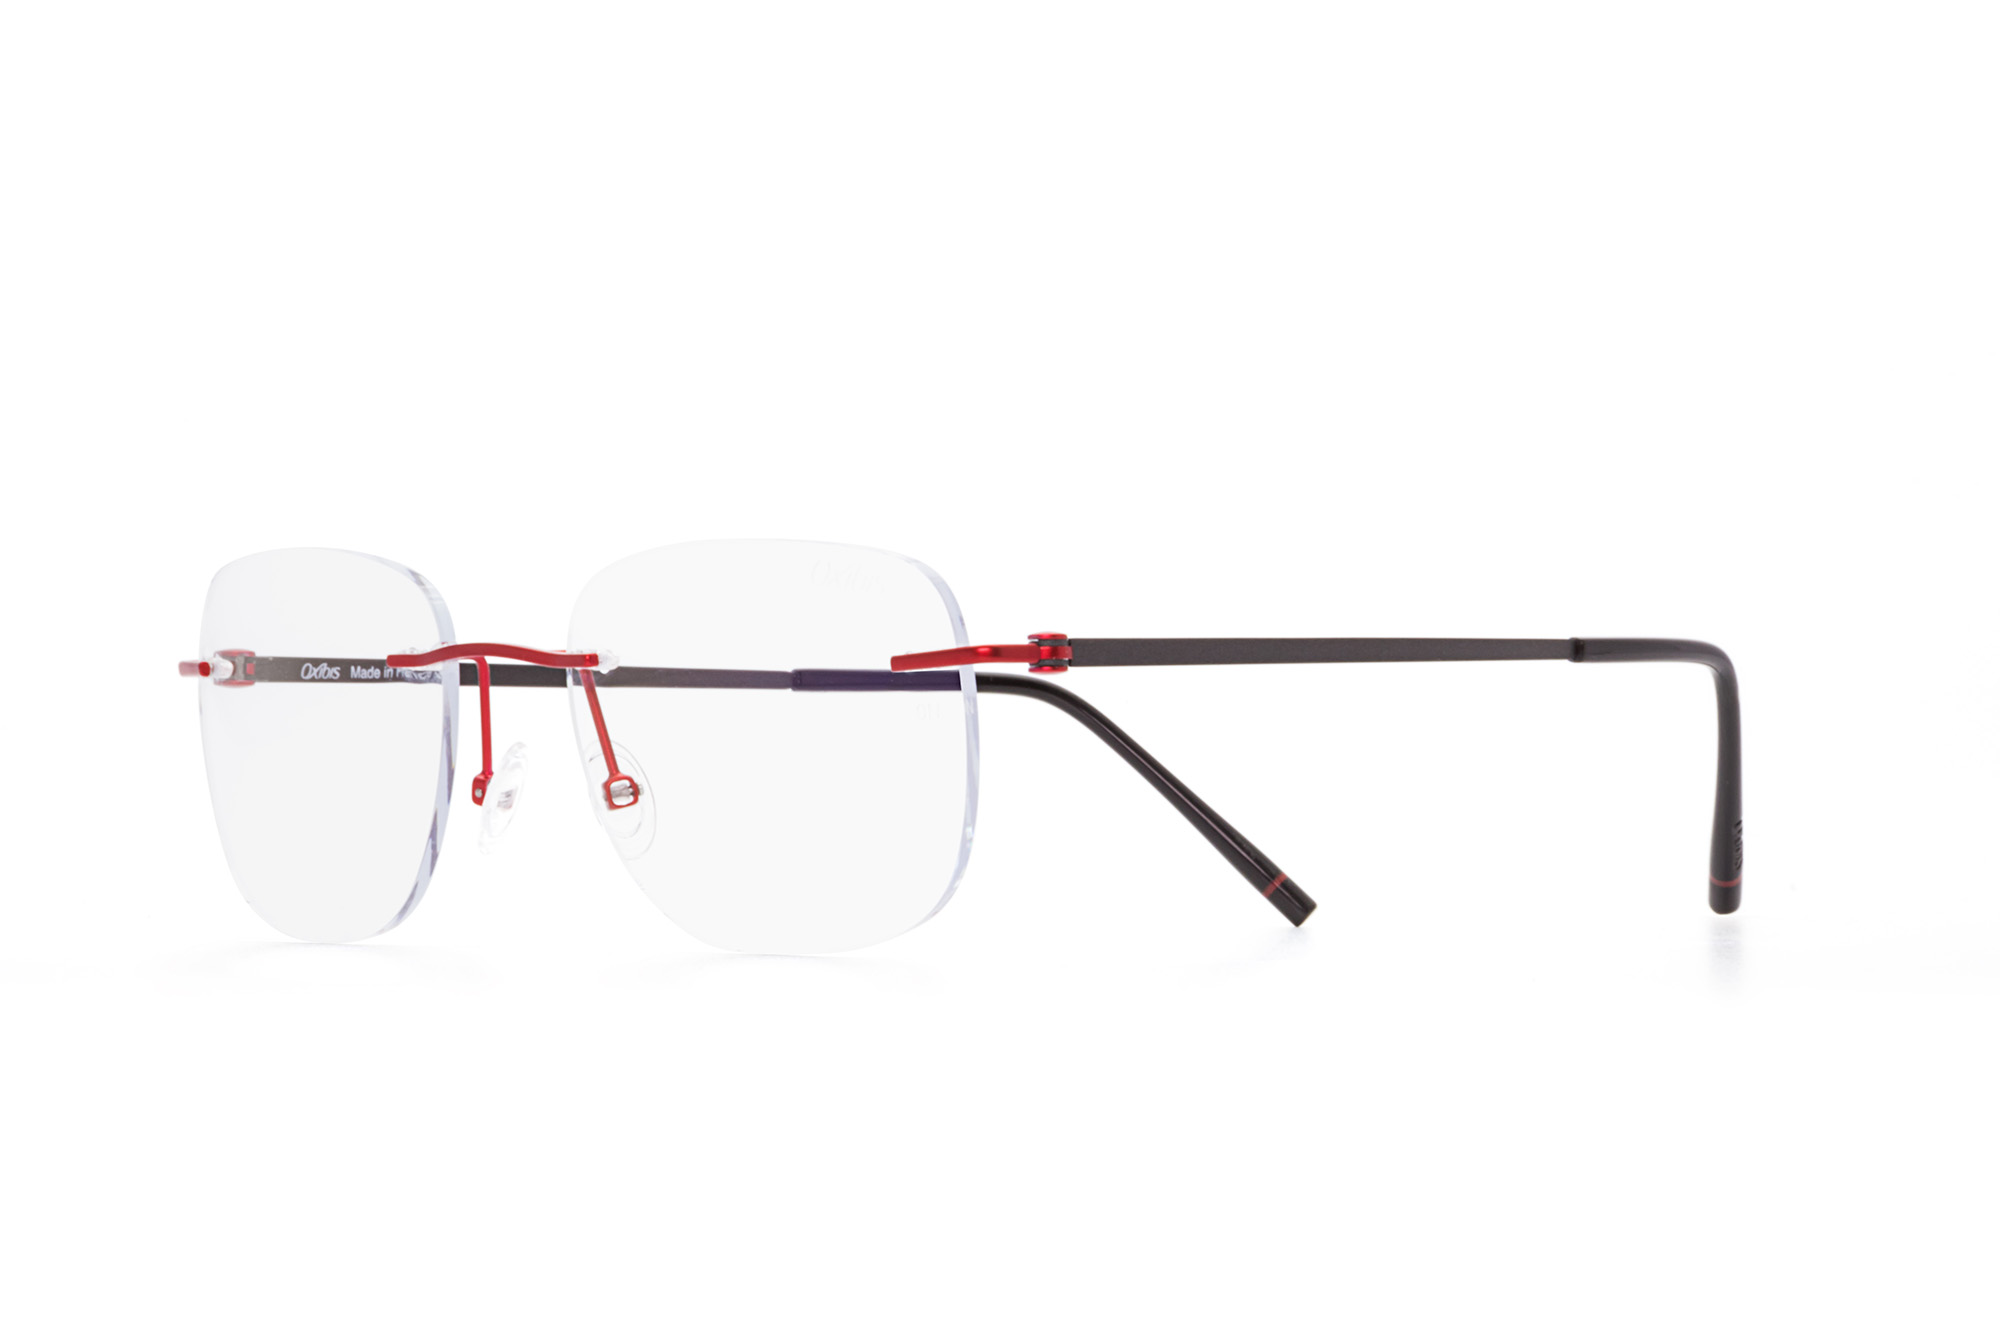 Kullanıma hazır optik tarzda işlenmiş camları ve optik uyumlu çerçevesiyle Oxibis Loop LO7C4 53 orta ekartman kırmızı ve gri renkli dikdörtgen model çerçevesiz unisex gözlüğü optisyen veya gözlükçülerin sunacağı numarasız veya numaralı cam özelleştirmeleriyle size en yakın gözlükçüden satın alabilirsiniz.